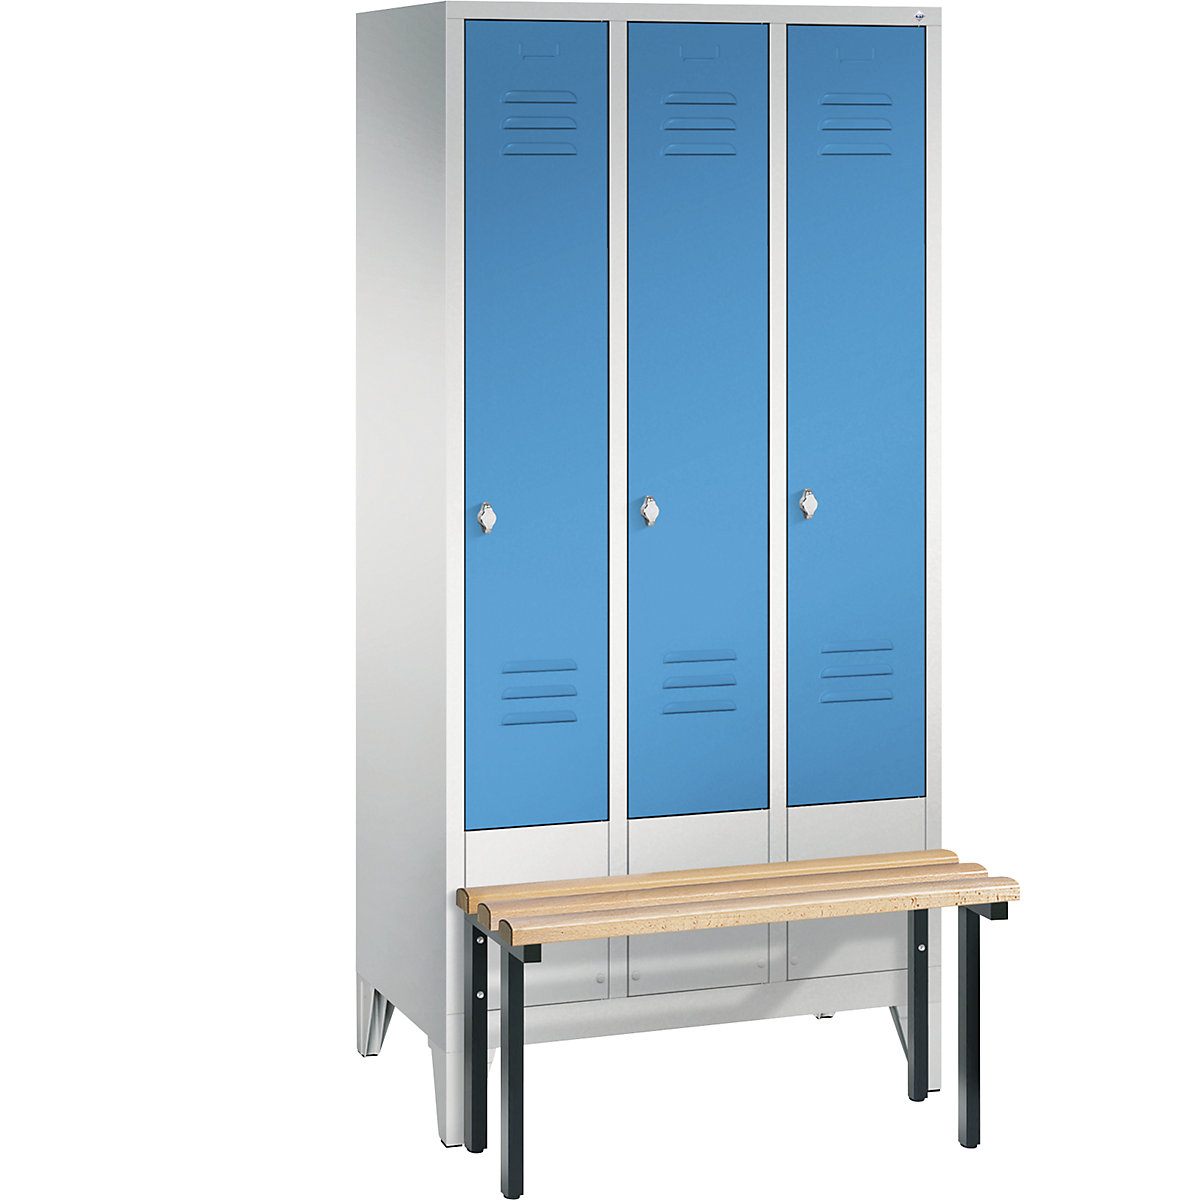 Garderobna omara CLASSIC s klopjo – C+P, 3 predelki, širina 300 mm/predelek, svetlo sive / svetlo modre barve-4